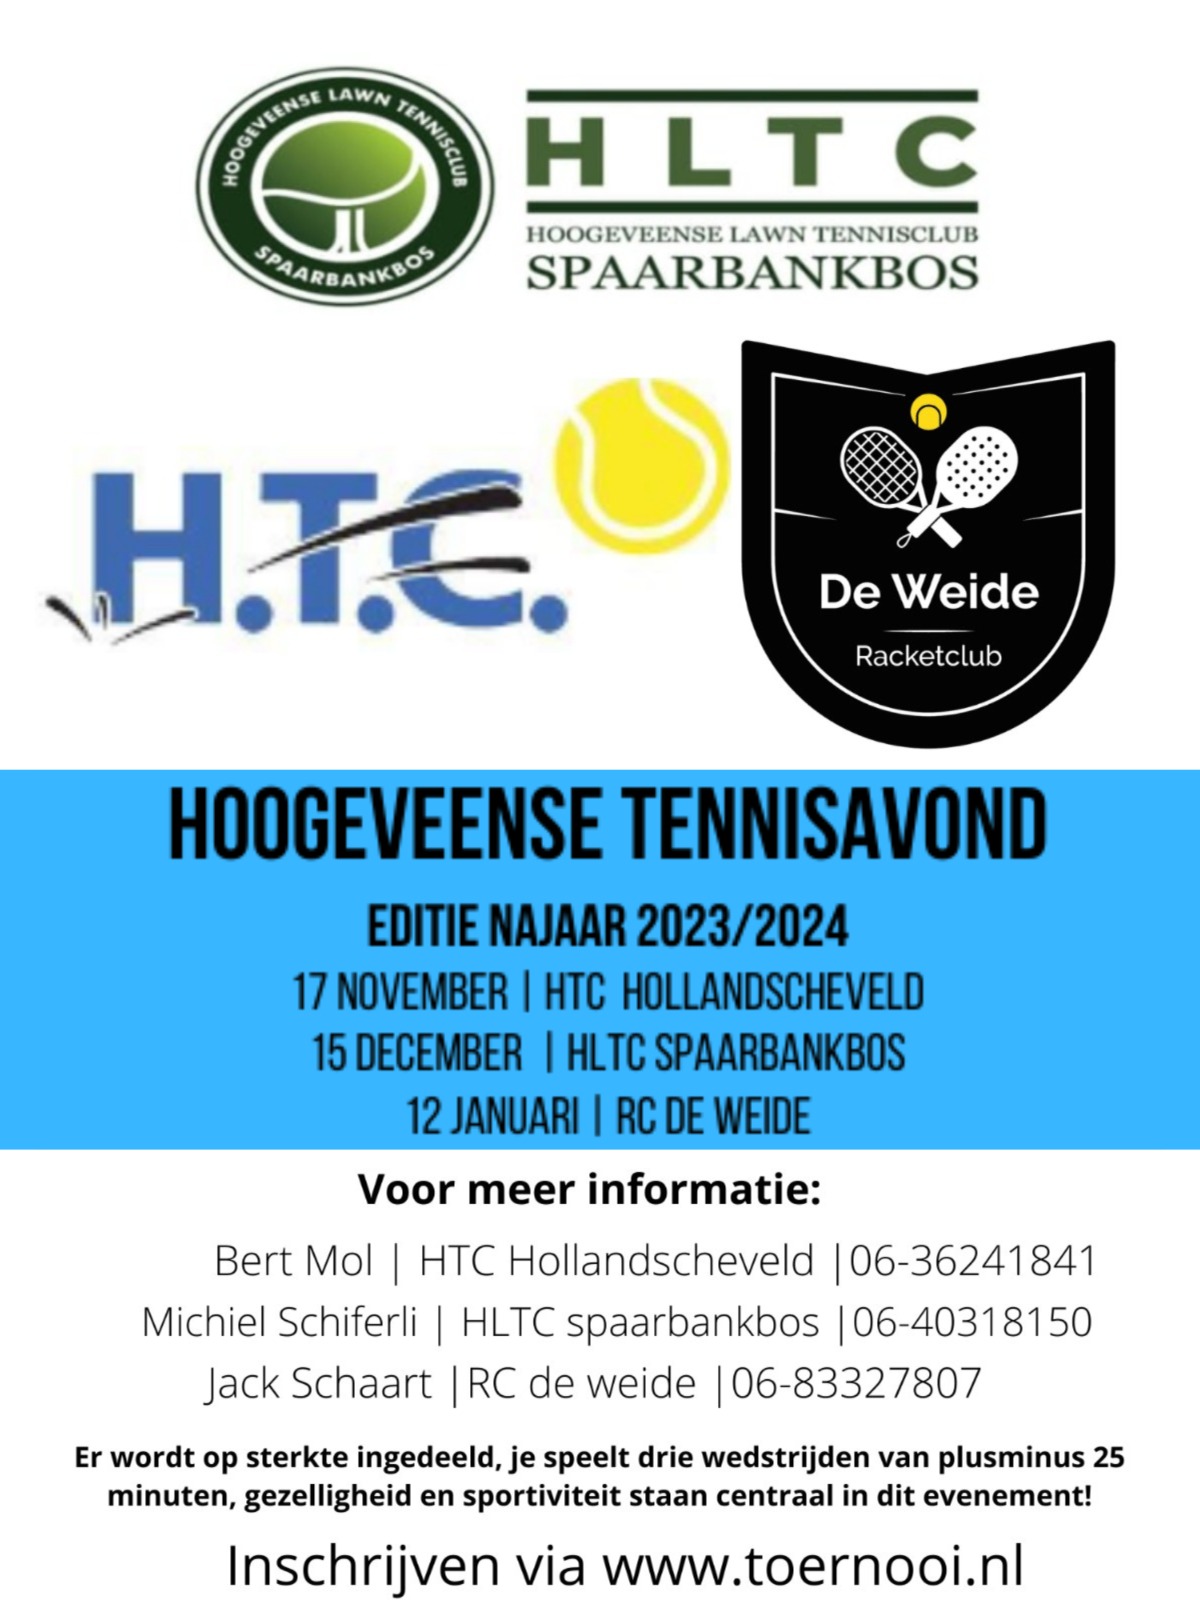 Hoogeveense Tennisavond R.C. de Weide